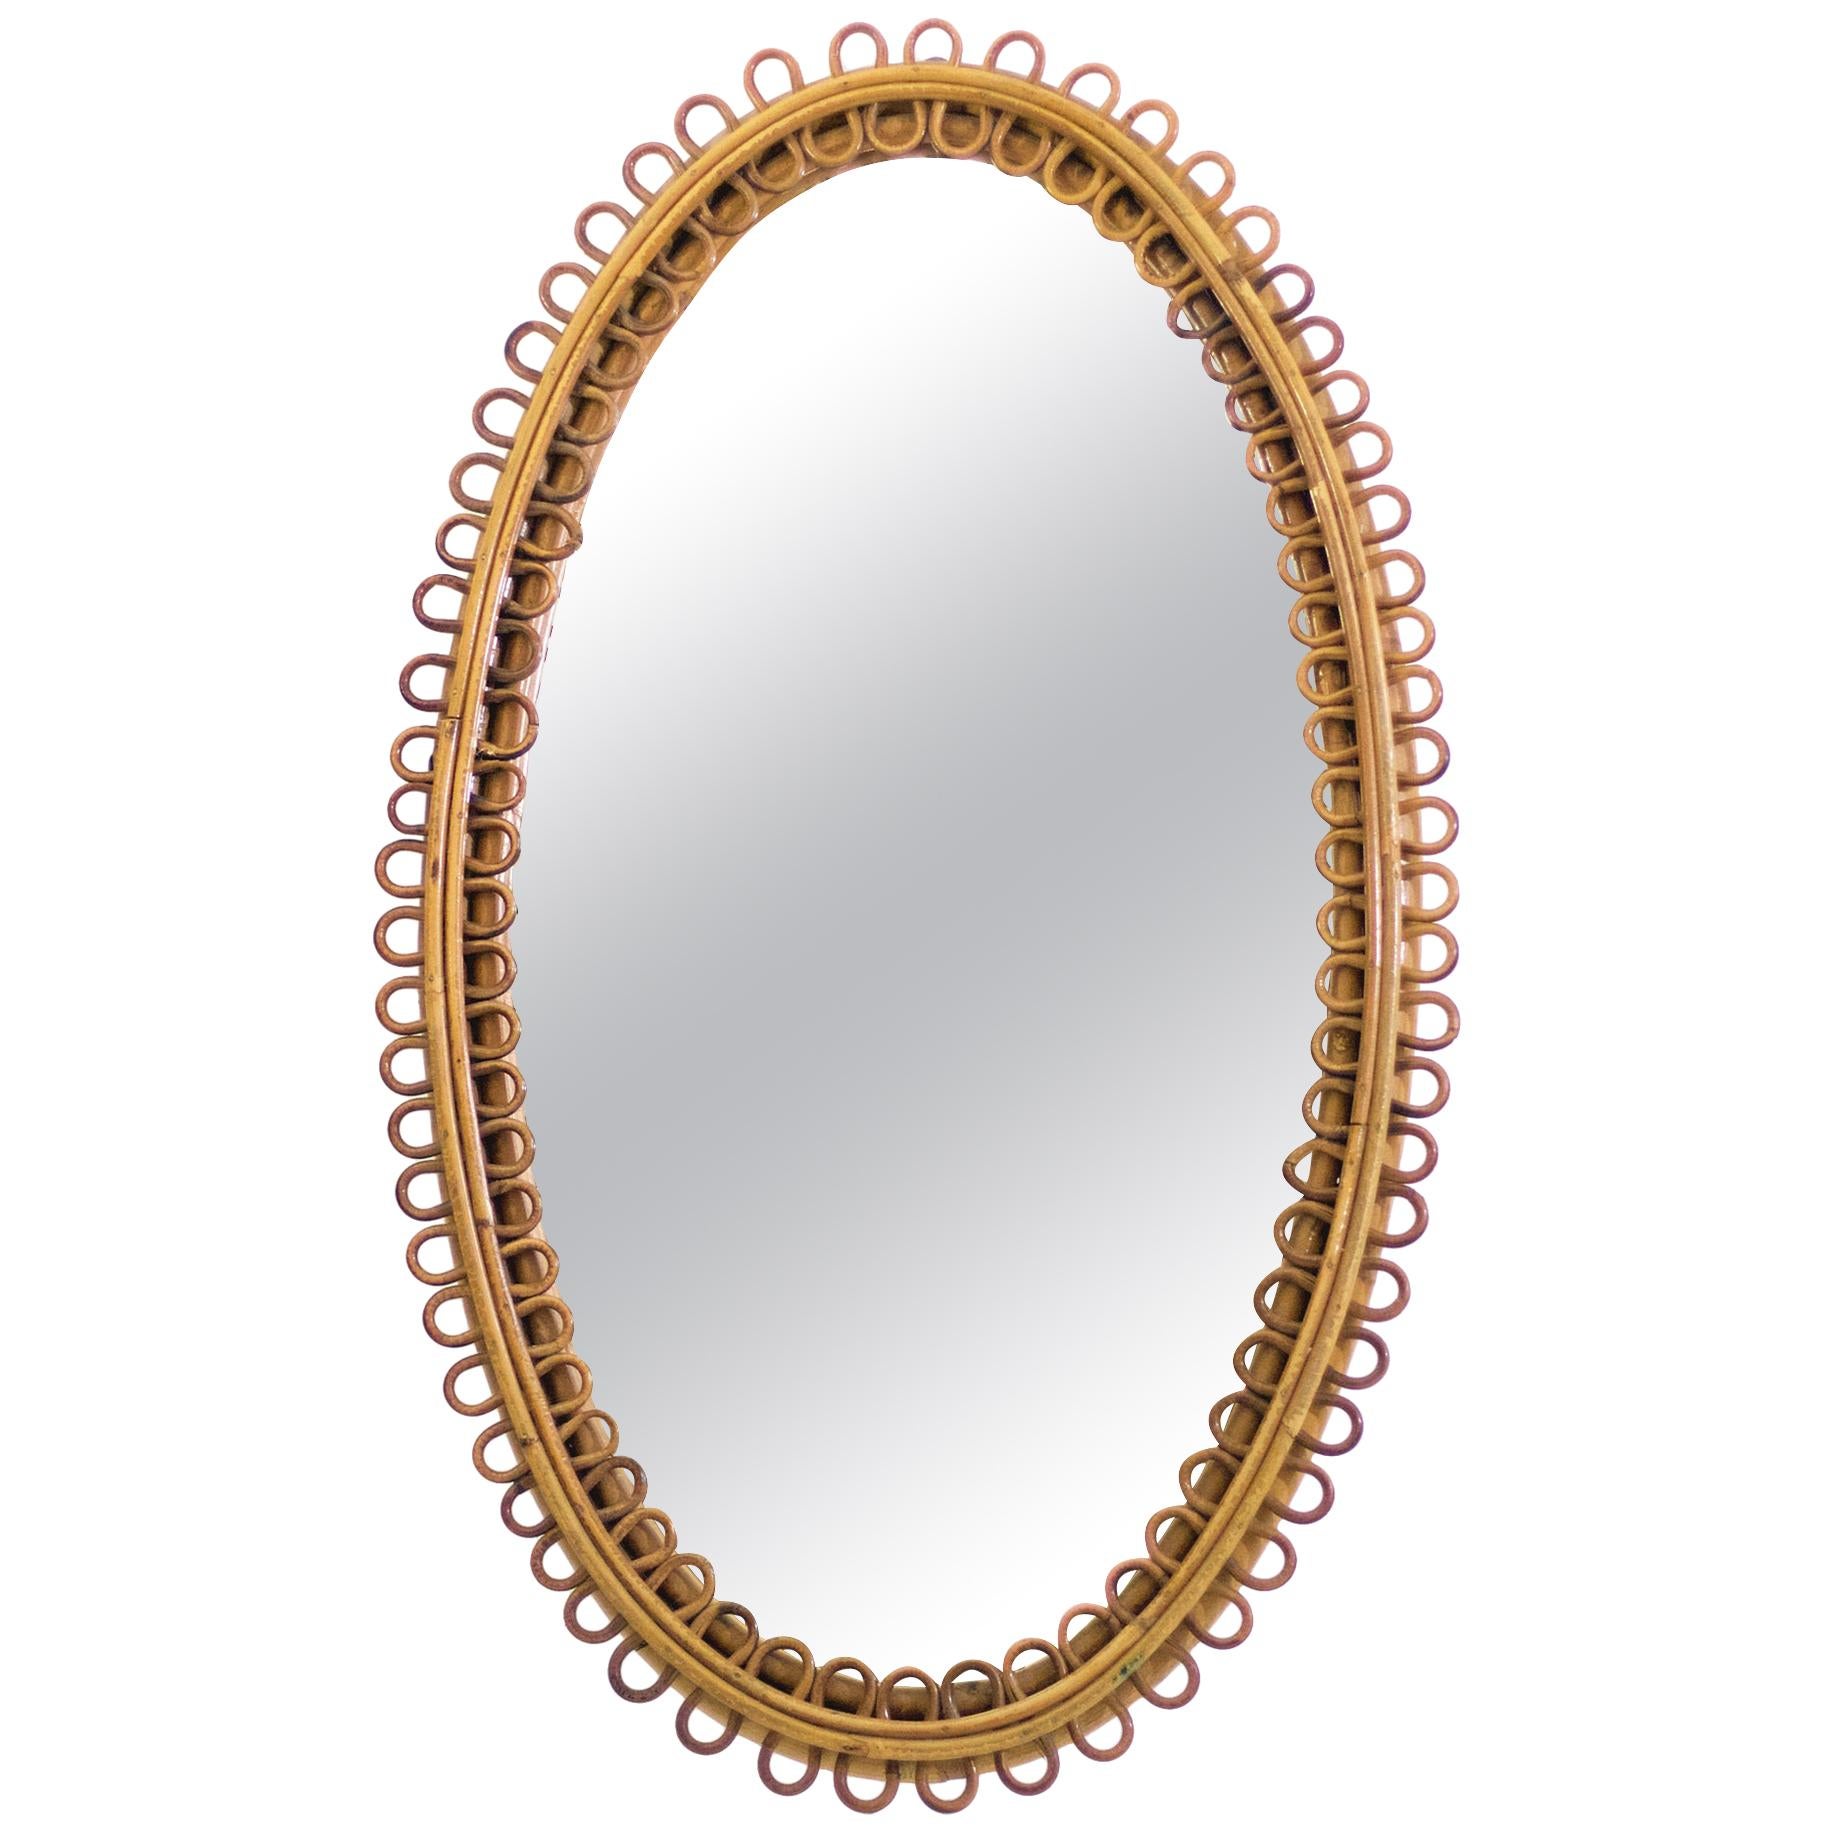 Midcentury Oval Italian Rattan Mirror